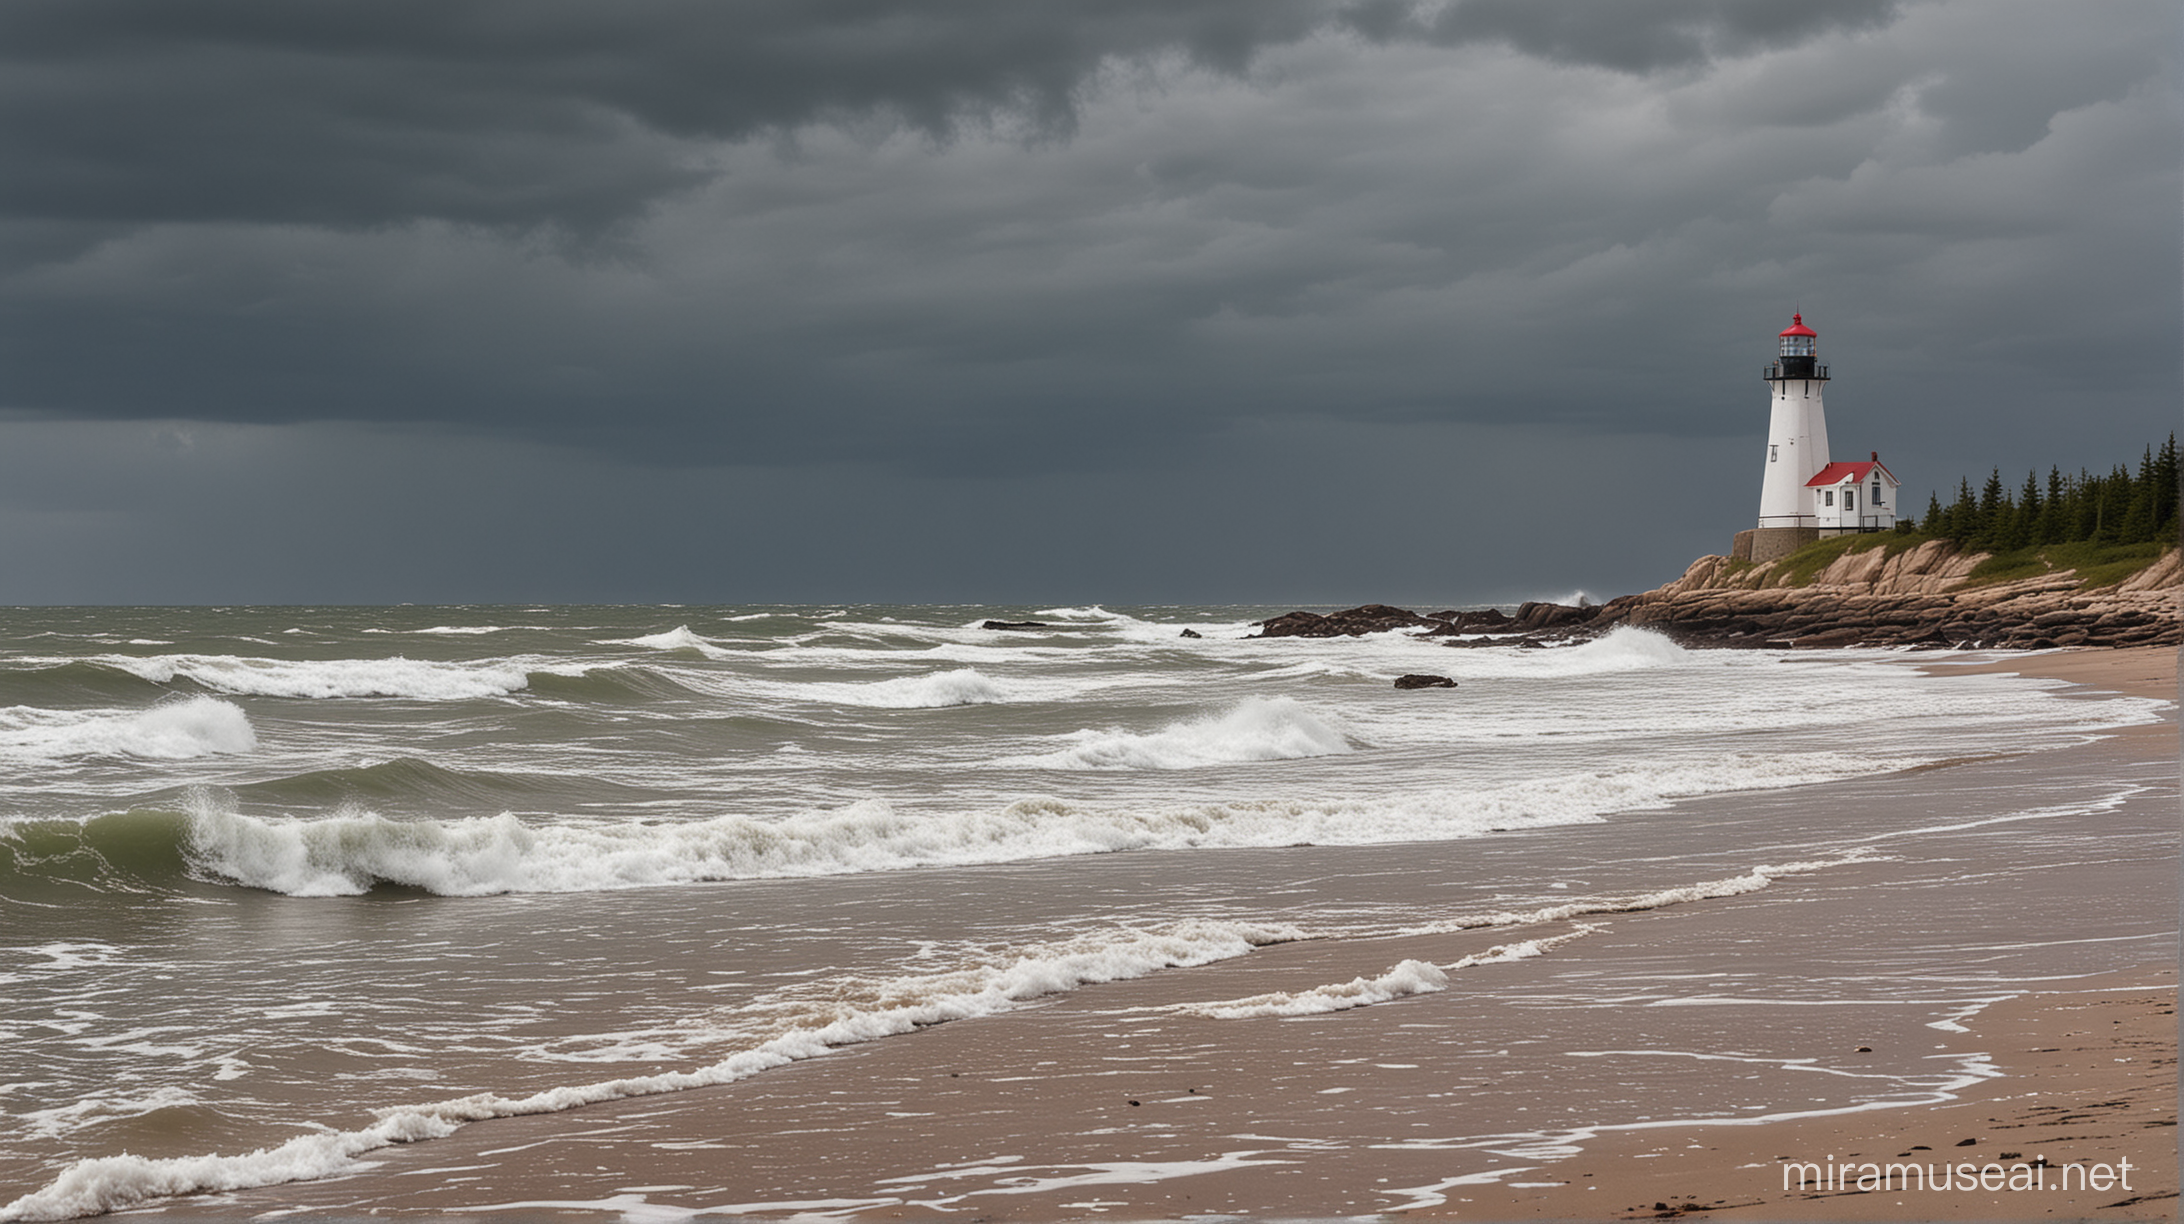 Stormy Sky Over Nova Scotia Beach with Lighthouse